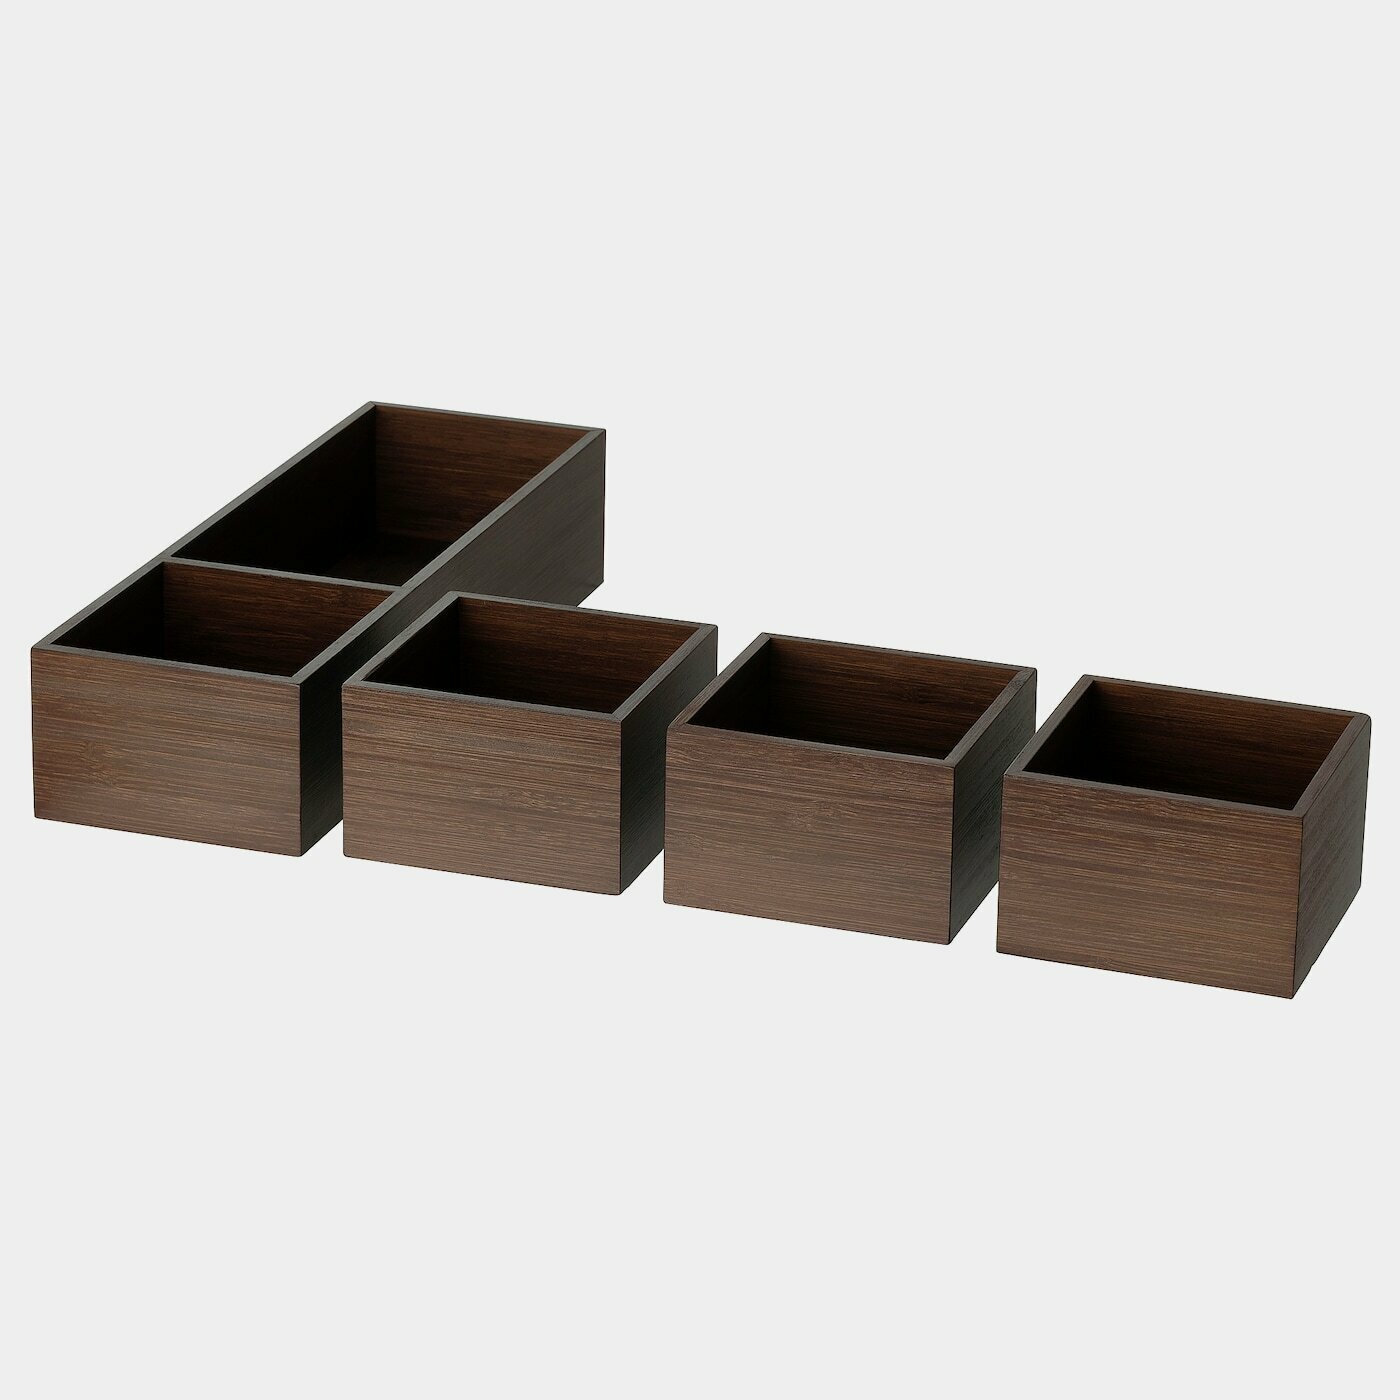 NÄBBIG Box 4er-Set  -  - Möbel Ideen für dein Zuhause von Home Trends. Möbel Trends von Social Media Influencer für dein Skandi Zuhause.